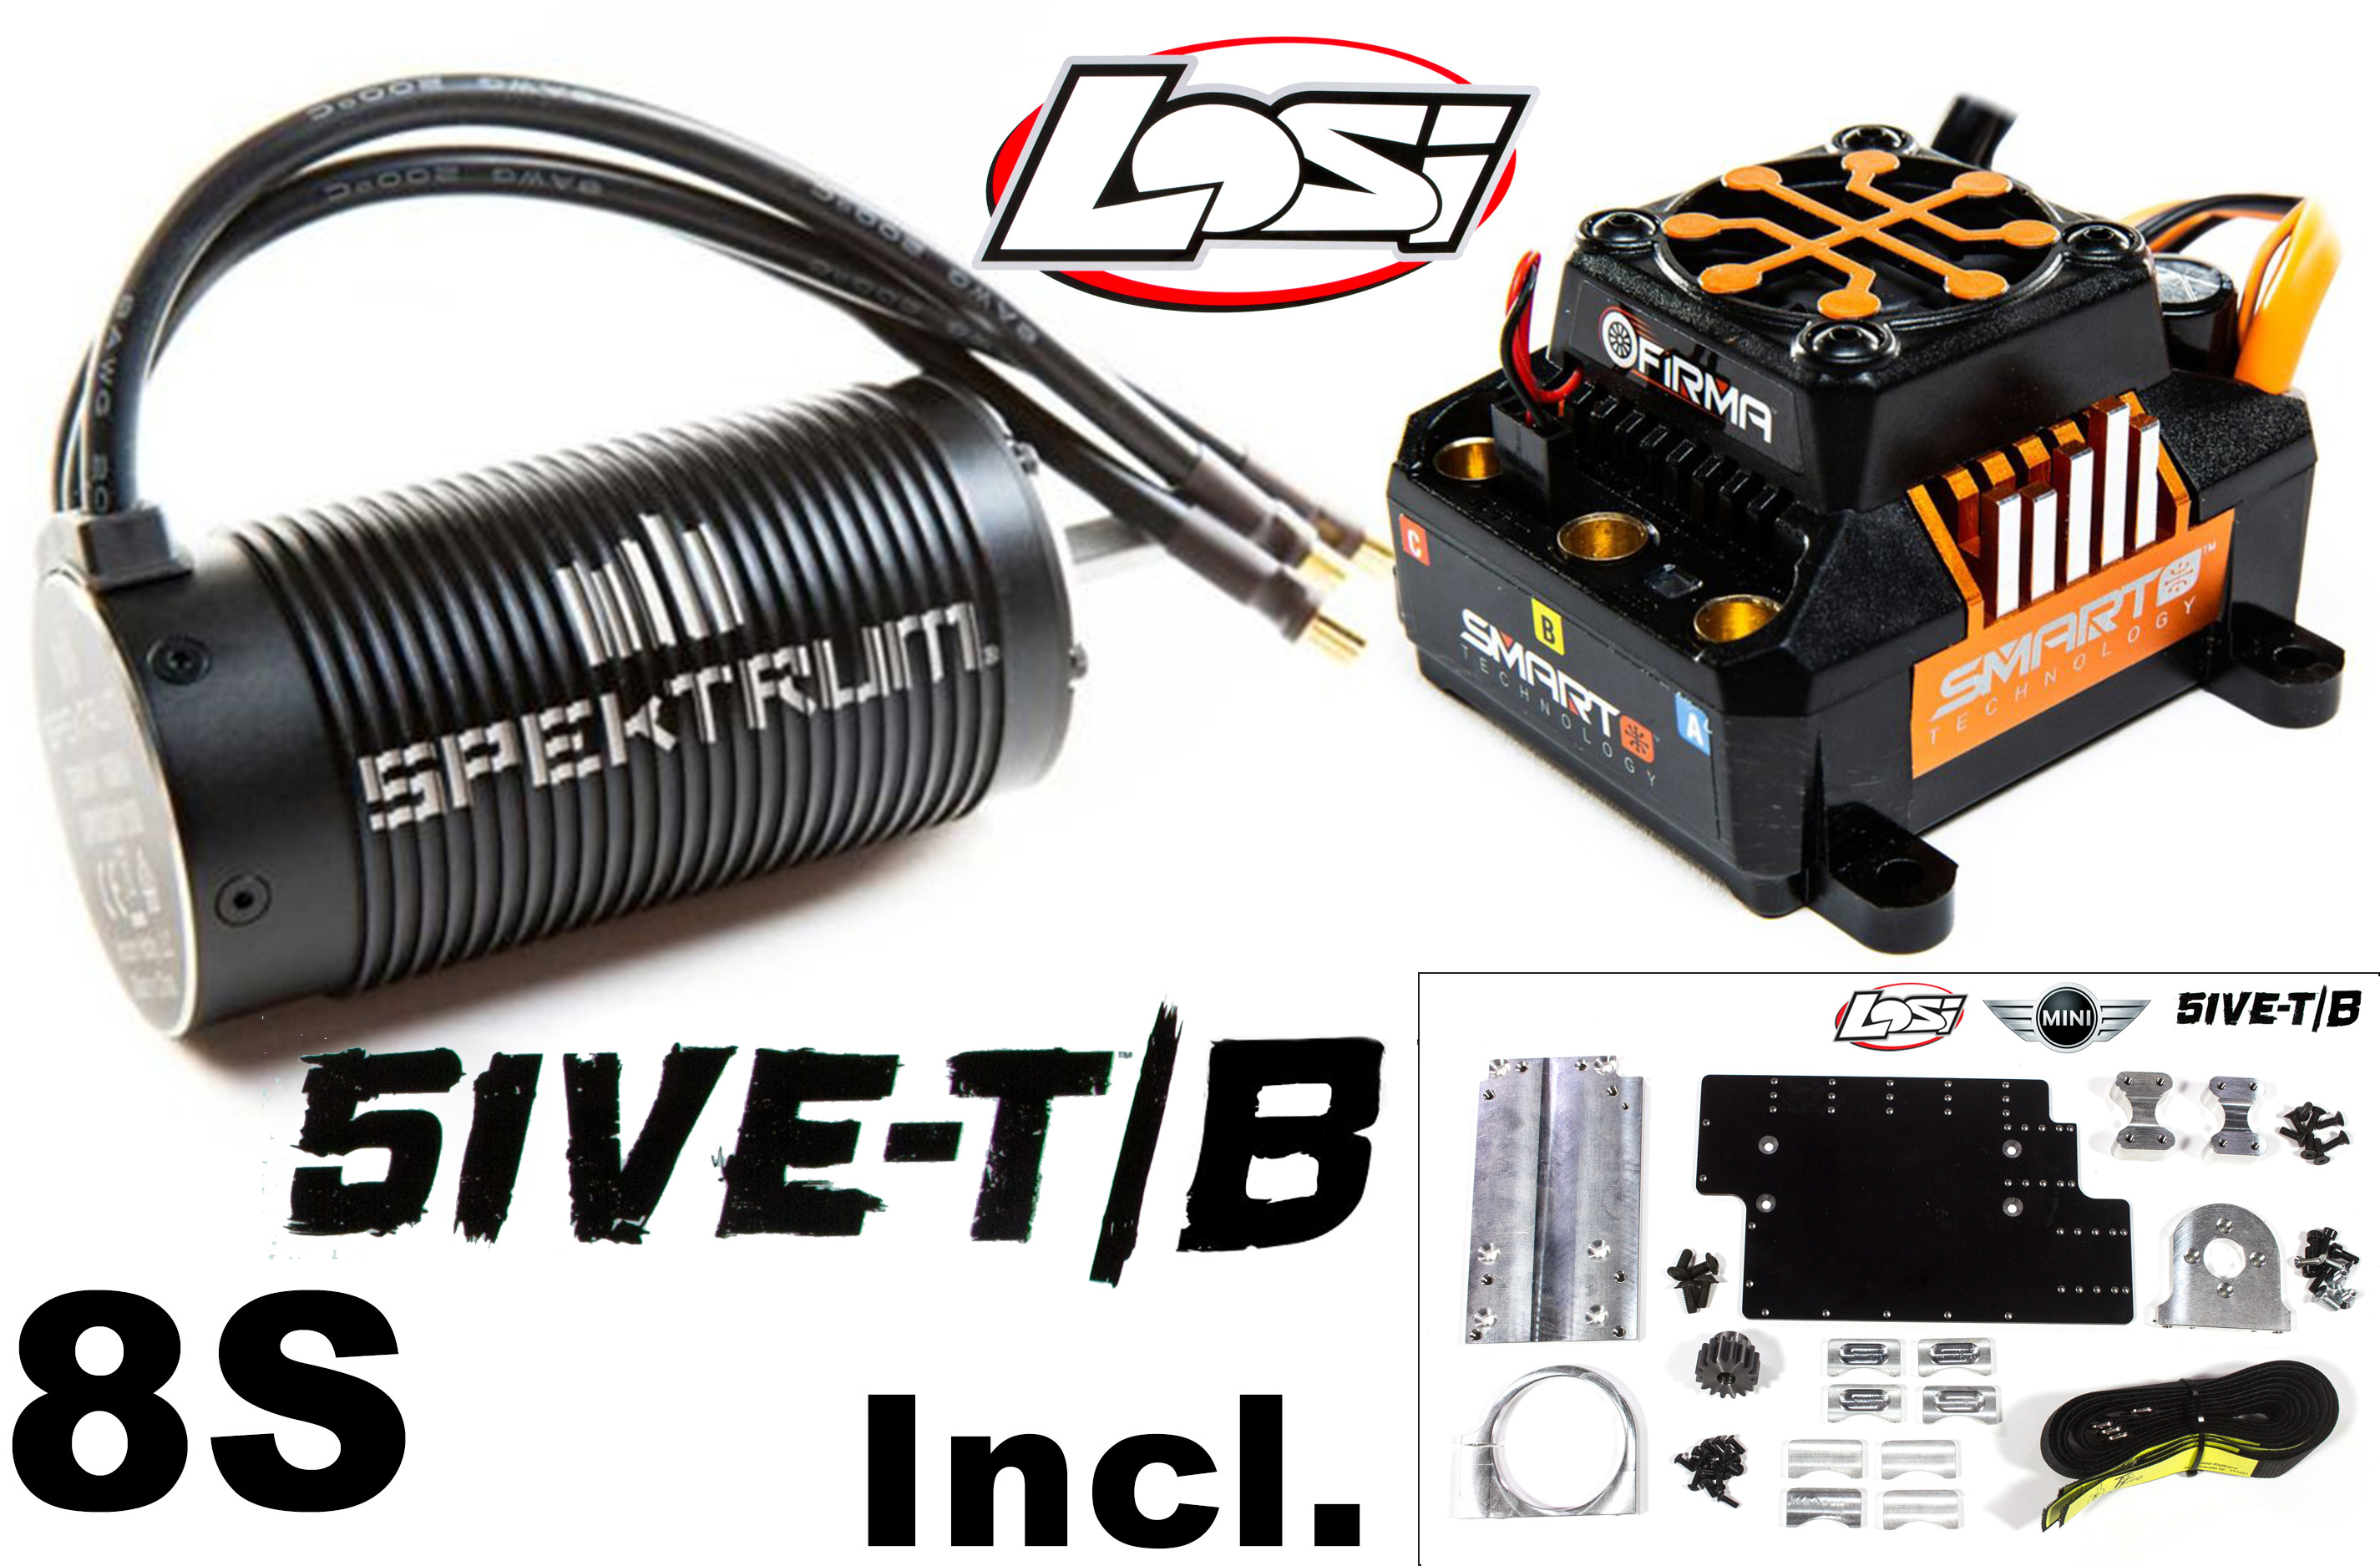 TT5013 Top Tuning complete Installation set for Losi 5iveT/B and Mini with original Losi Spektrum/ ESC